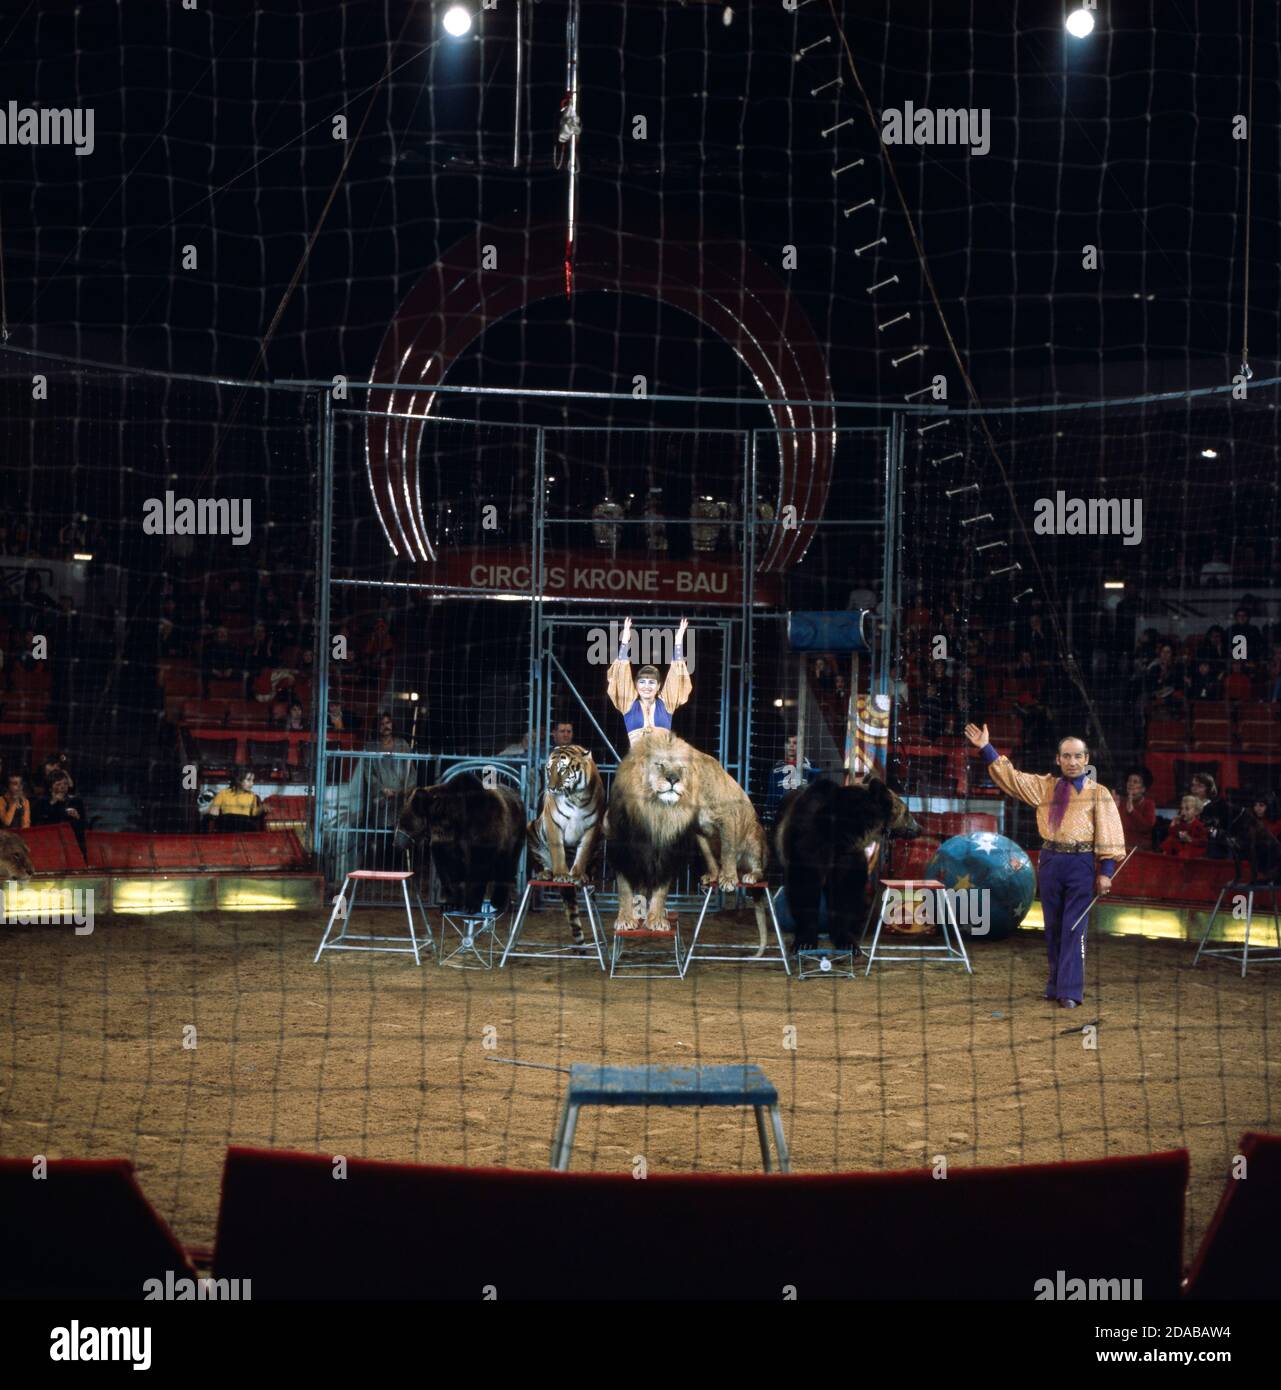 Henryk und Teresa Wawrzyniak mit Raubtiernummer, 1976. Henryk und Teresa Wawrzyniak spielen mit ihren Raubtieren im Zirkus Krone, 1976. Stockfoto